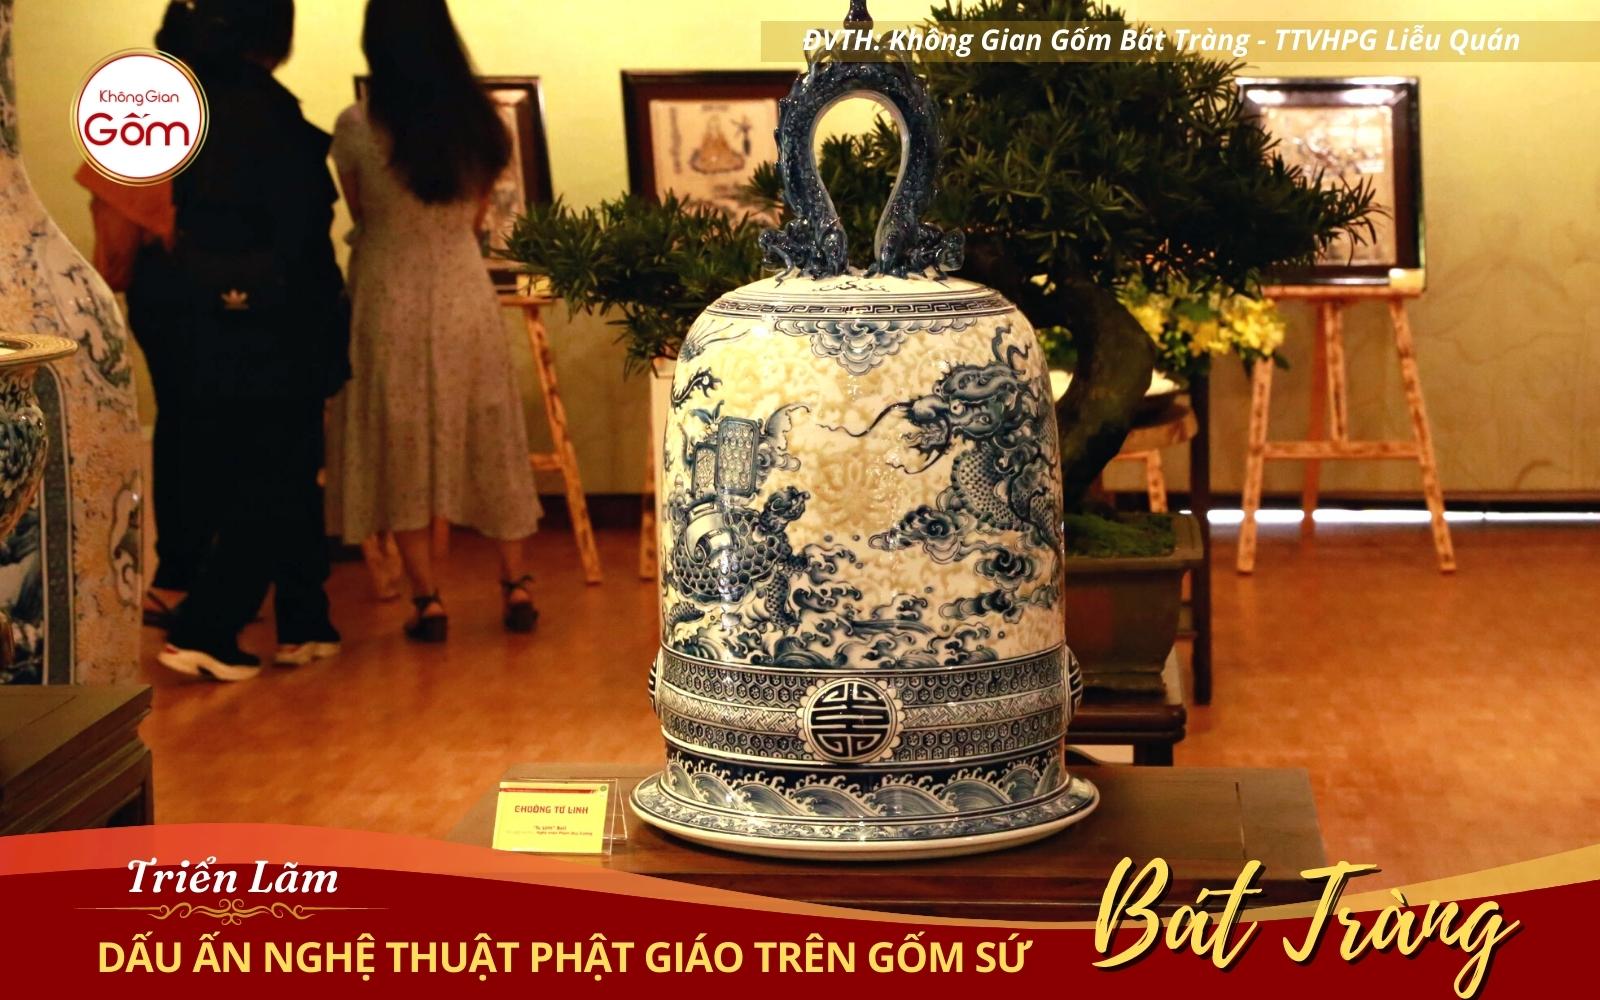 Thưởng lãm “Dấu ấn nghệ thuật Phật giáo trên gốm sứ Bát Tràng” tại Huế